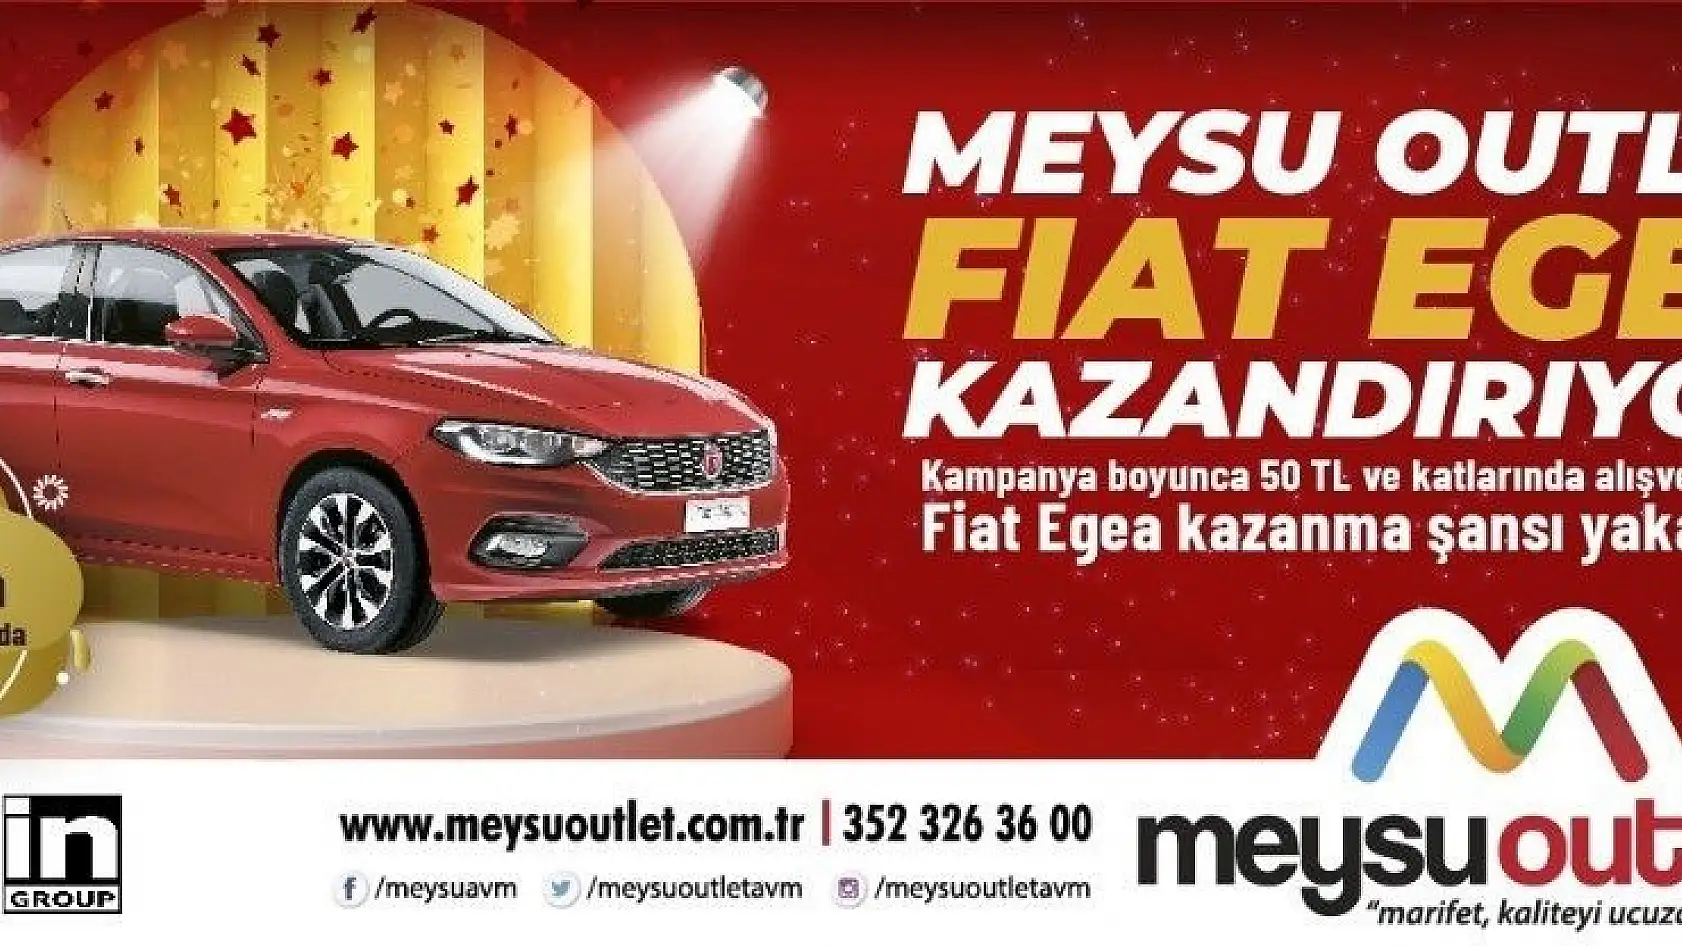 MEYSU Outlet Fiat Egea kazandırıyor
